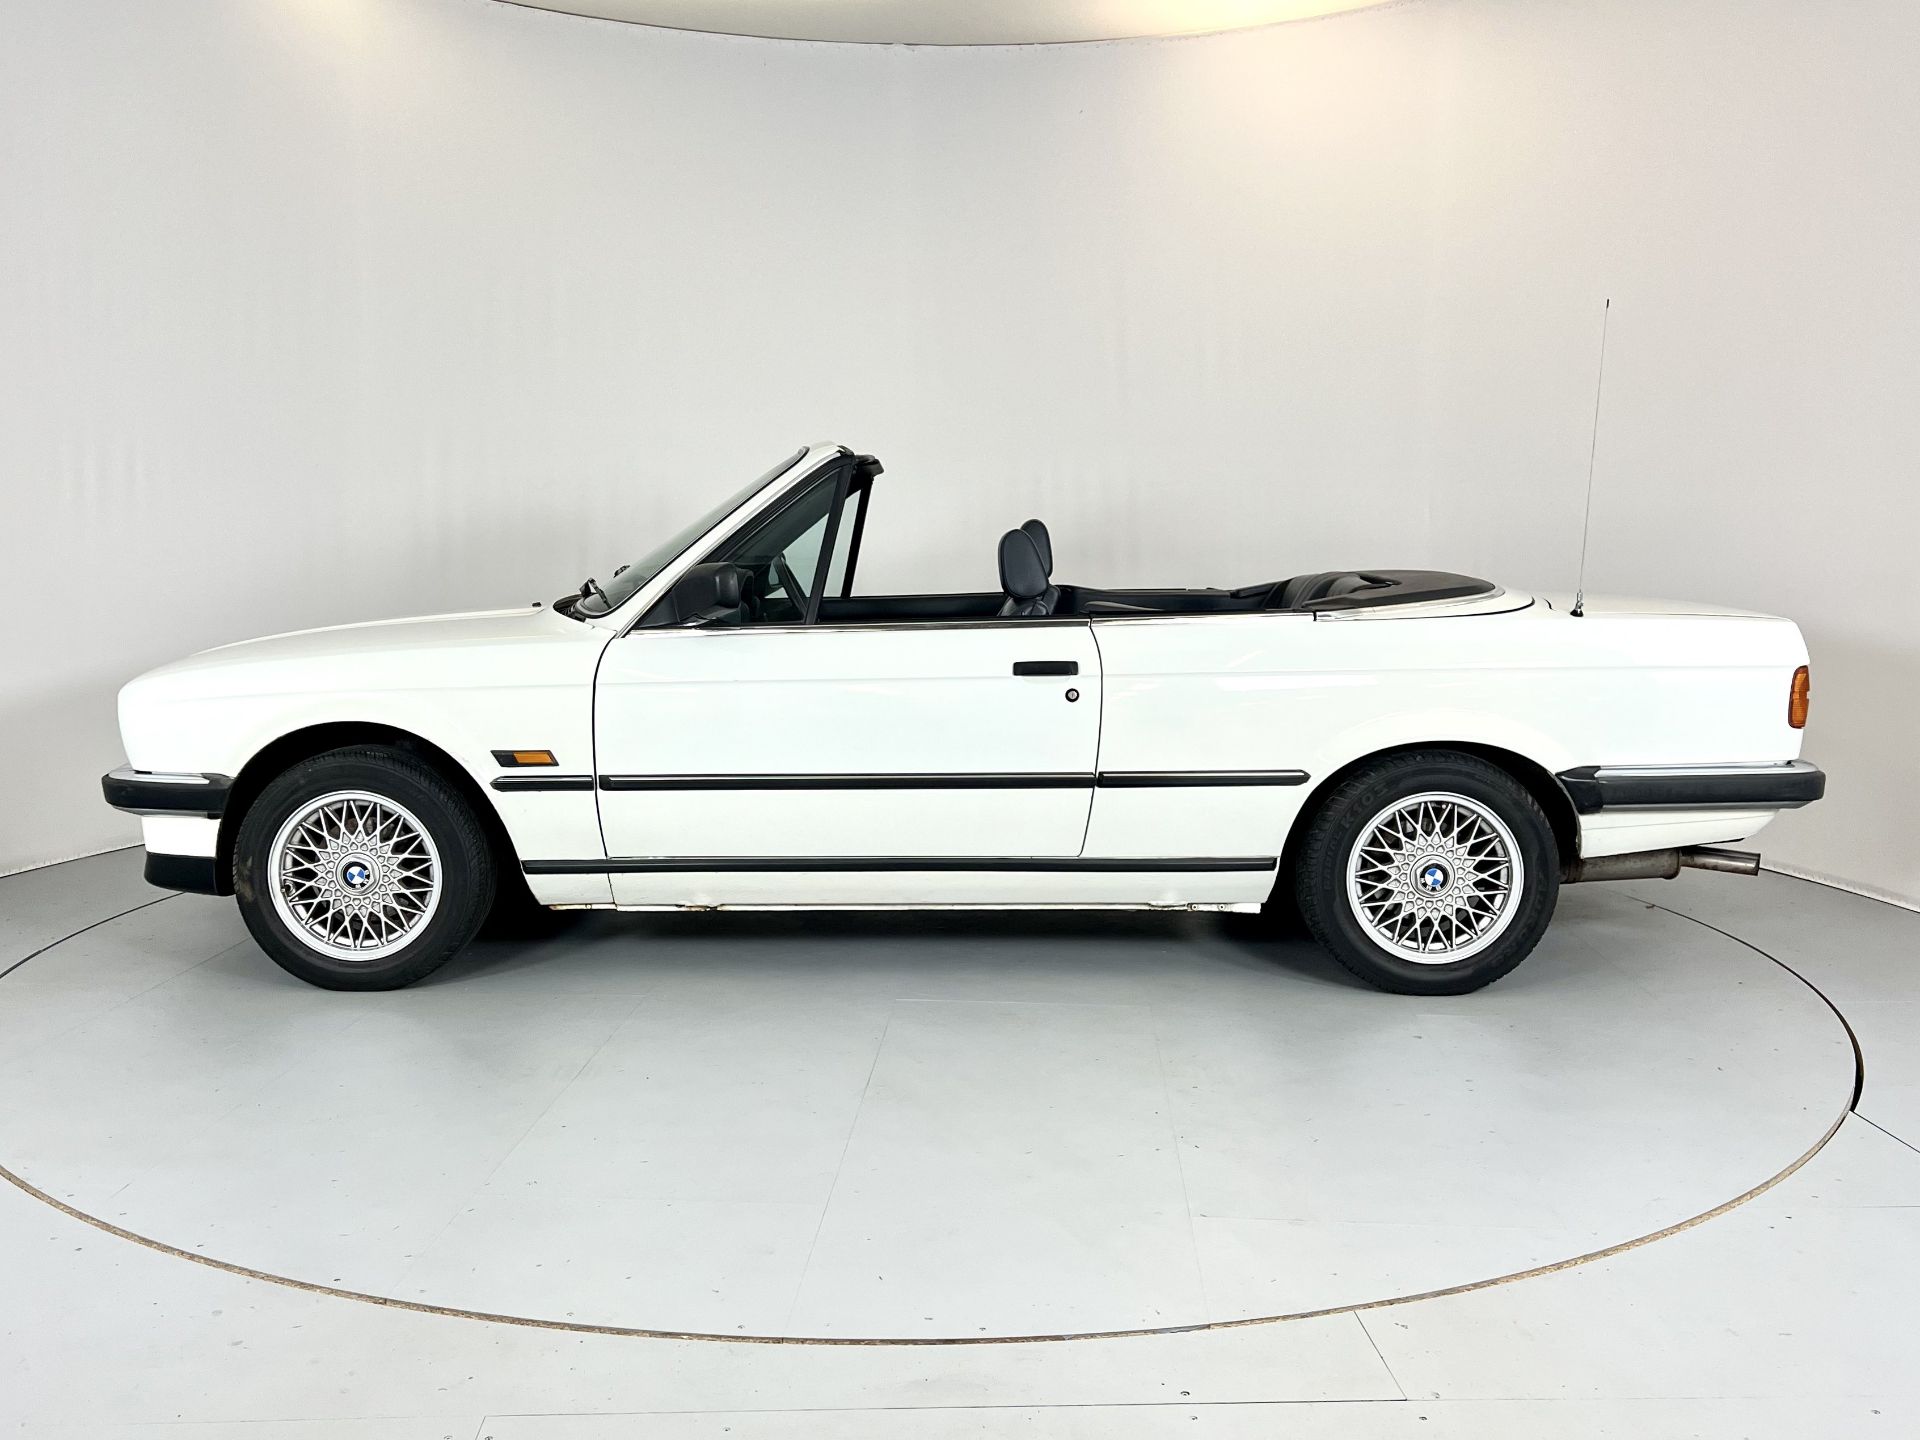 BMW 325i Cabriolet - Image 5 of 32